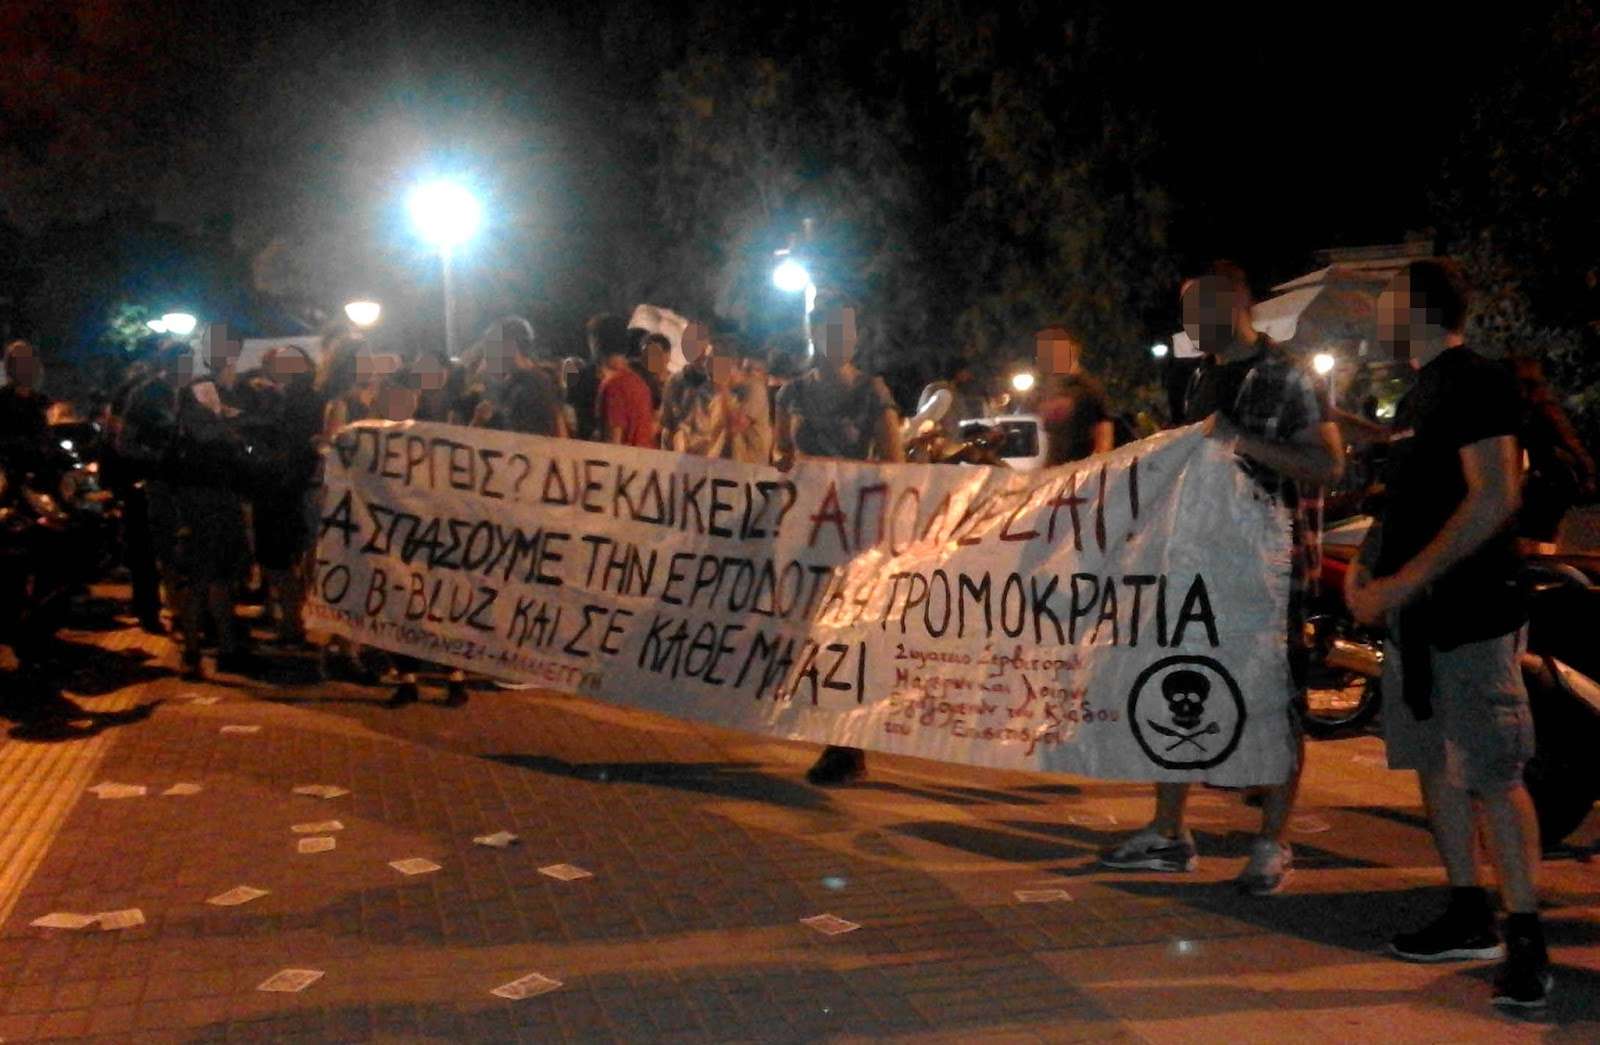 Αθήνα: Άμεση δικαίωση των απολυμένων του “B-BLUZ” – Συγκέντρωση στα δικαστήρια της Ευελπίδων [Δευτέρα 17/10, 9πμ]